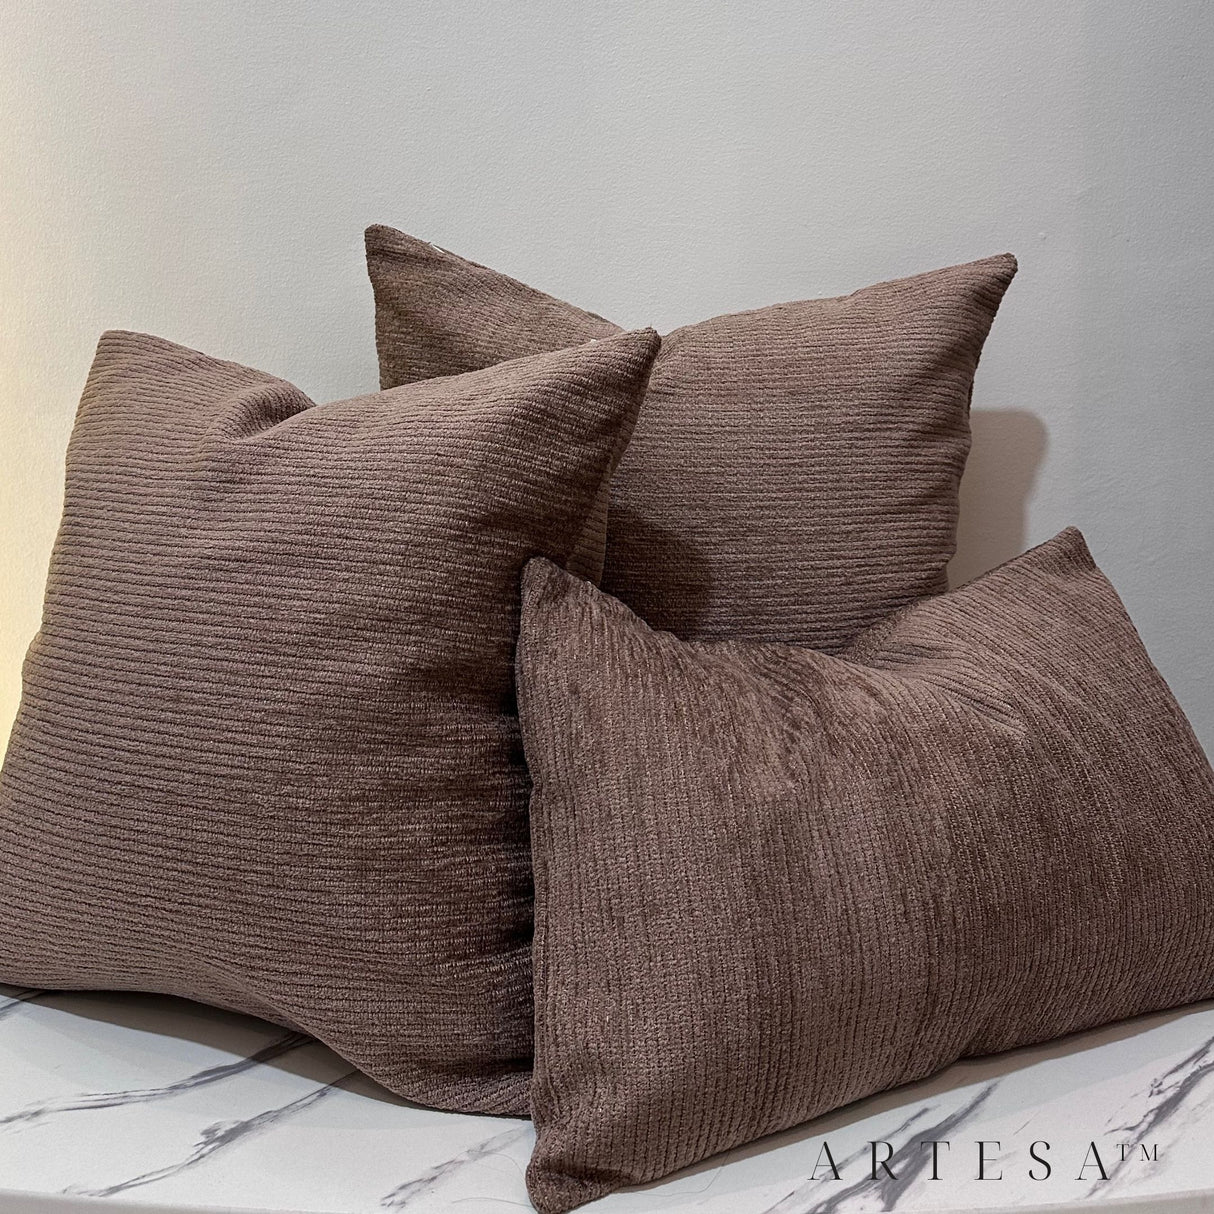 Artesa Nora Premium Cotton Chanel Throw Pillow Set of 3 - Elegant Home Decor Ensemble